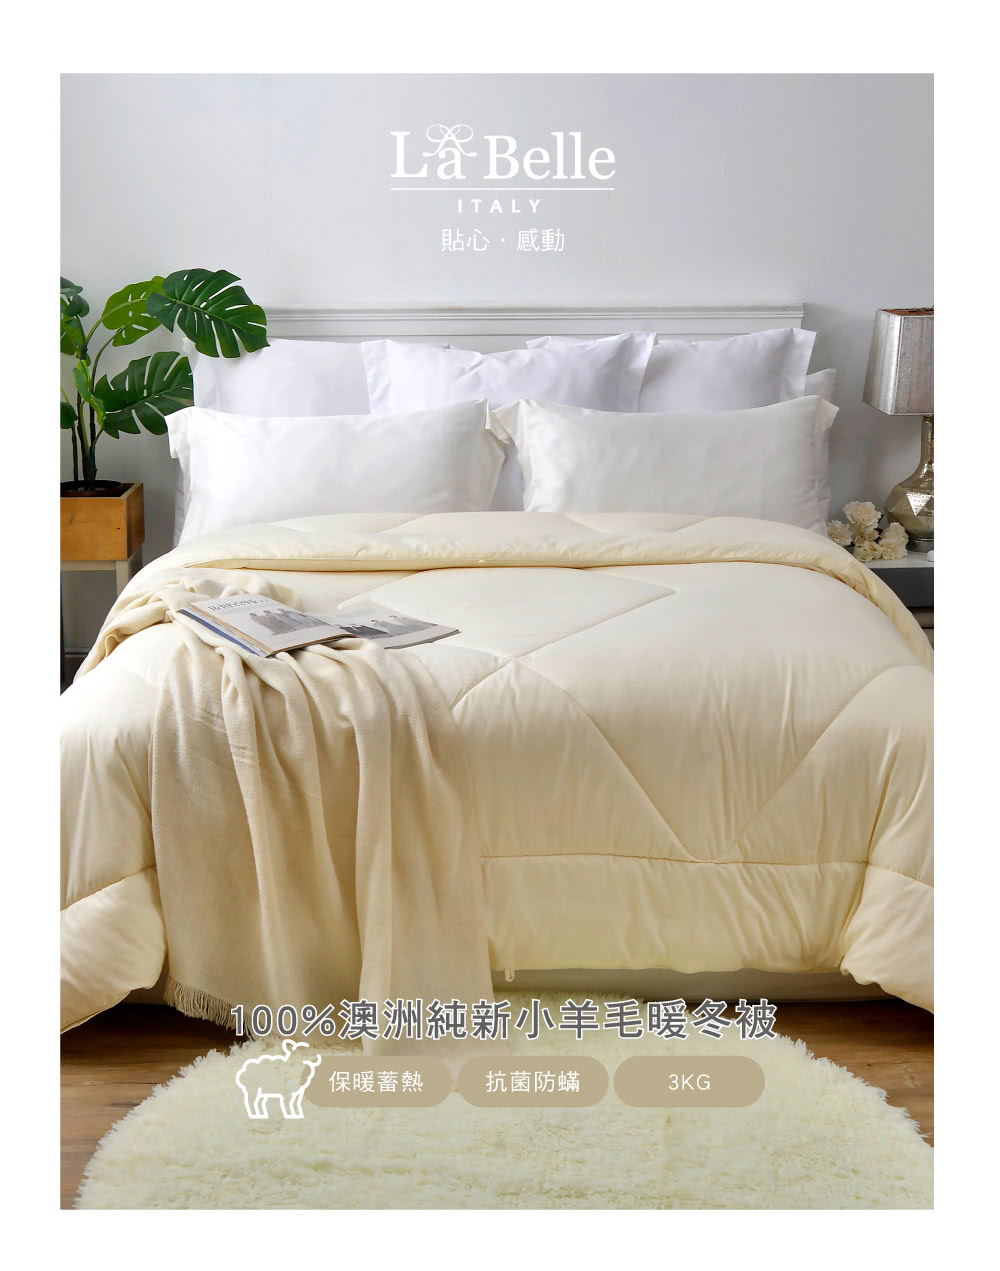 La Belle 100%澳洲純新小羊毛防螨抗菌暖冬被(雙人